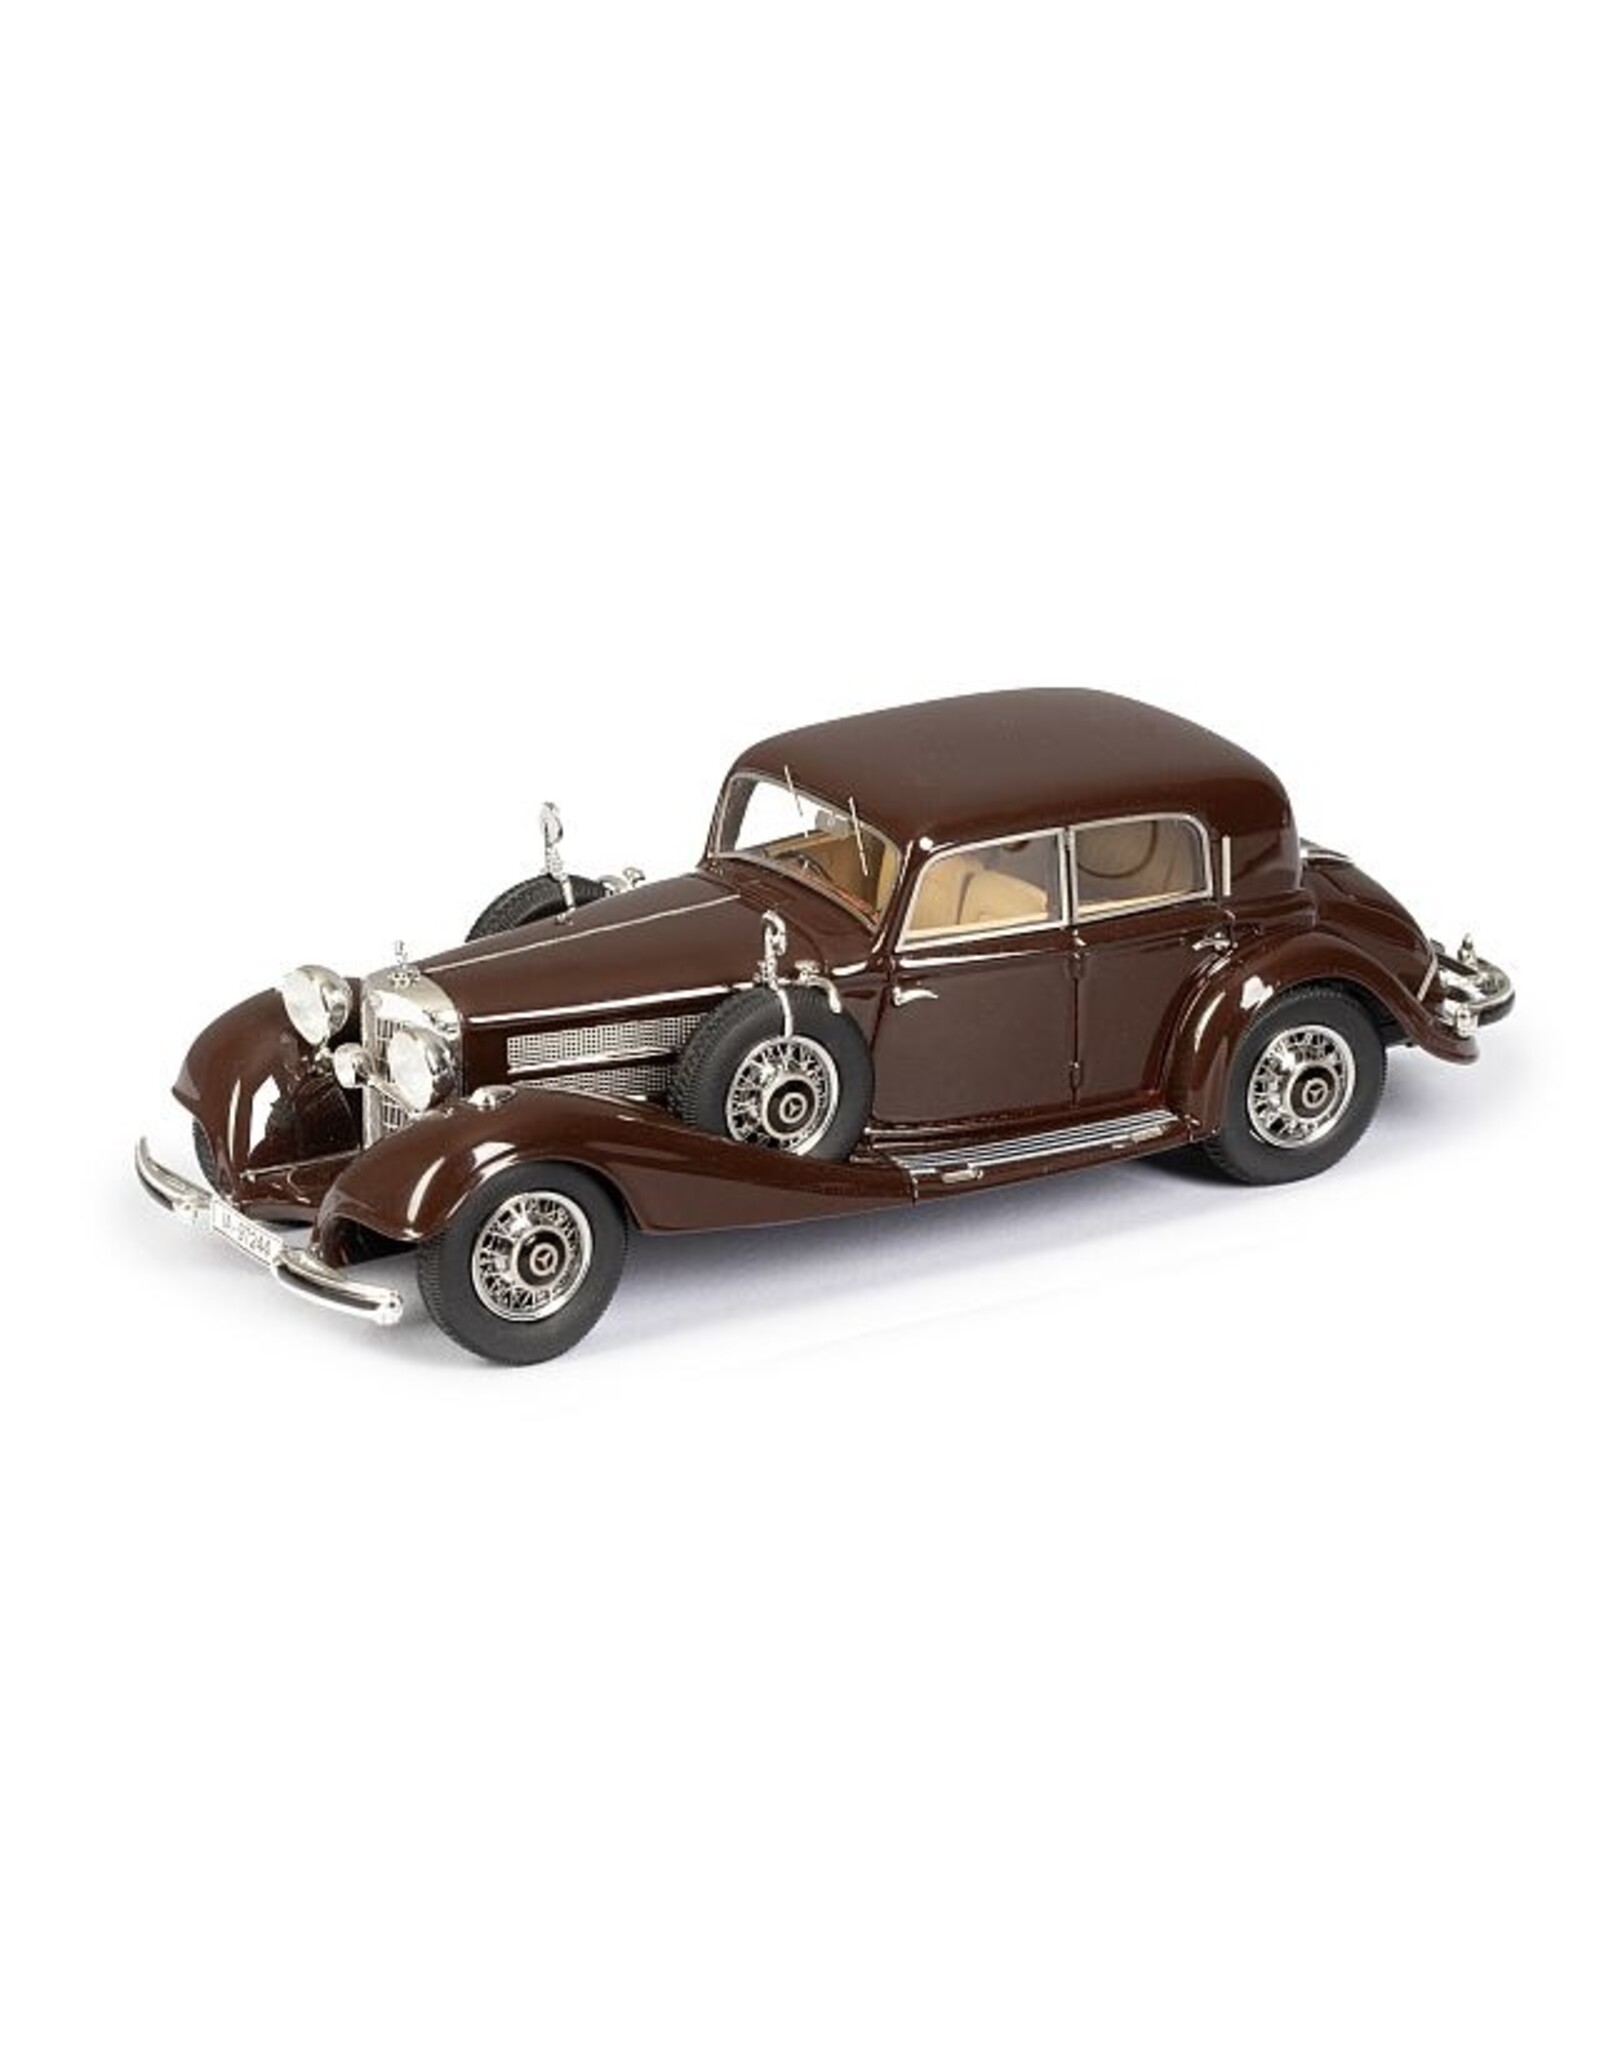 Mercedes-Benz Mercedes-Benz 540K(W29)4-door sedan(1936)chestnut brown